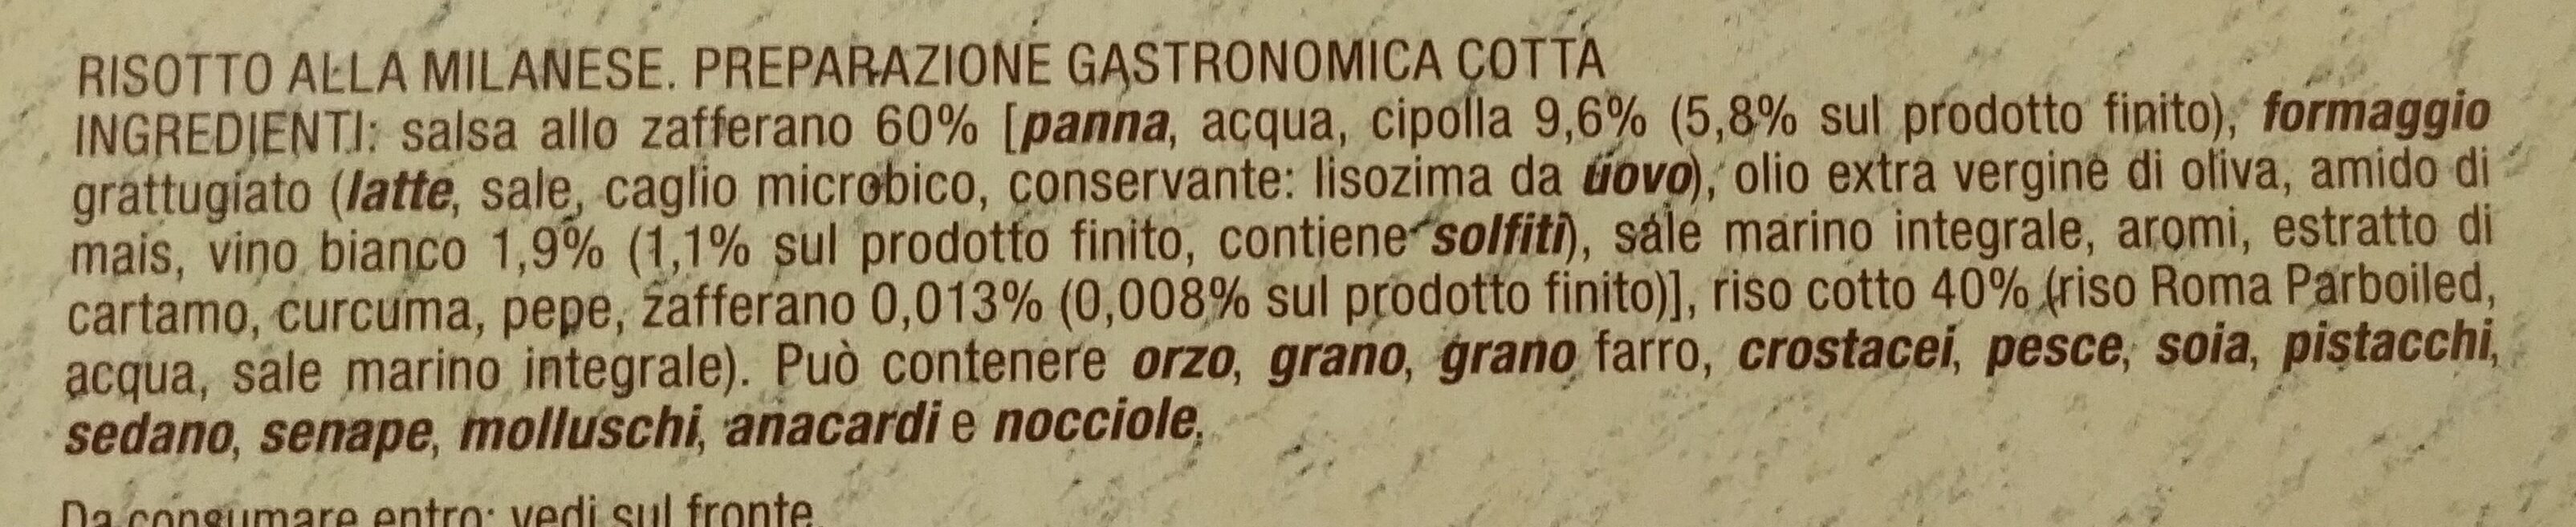 Risotto alla milanese - Ingredienti